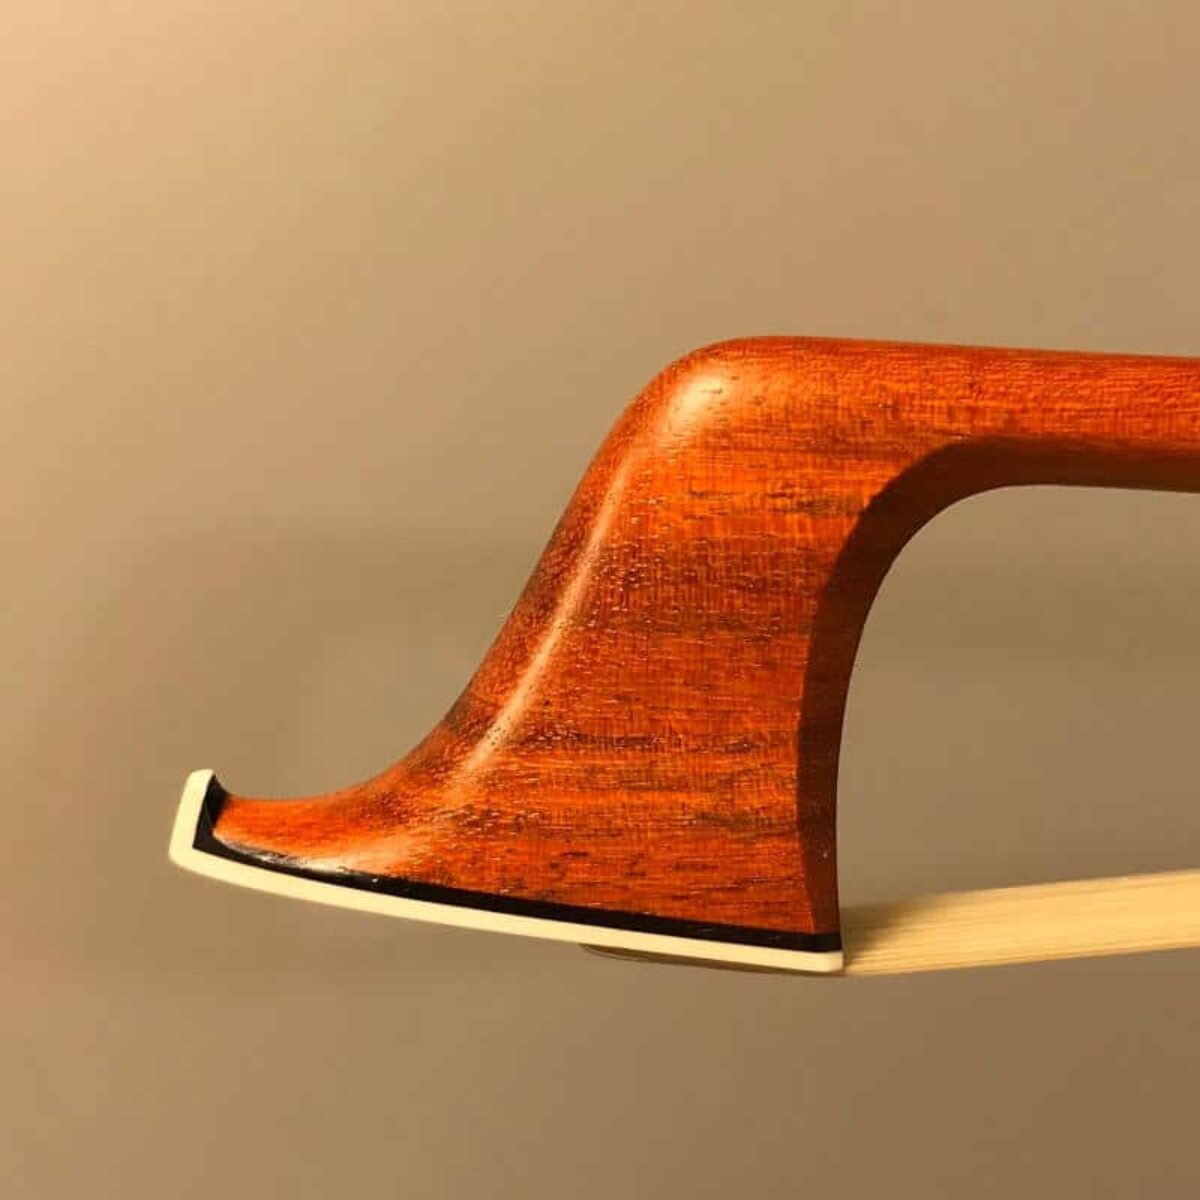 Bow pernambuco per violino ox horn Rana QUALITY HAND MADE Regno Unito Venditore! Full Size 